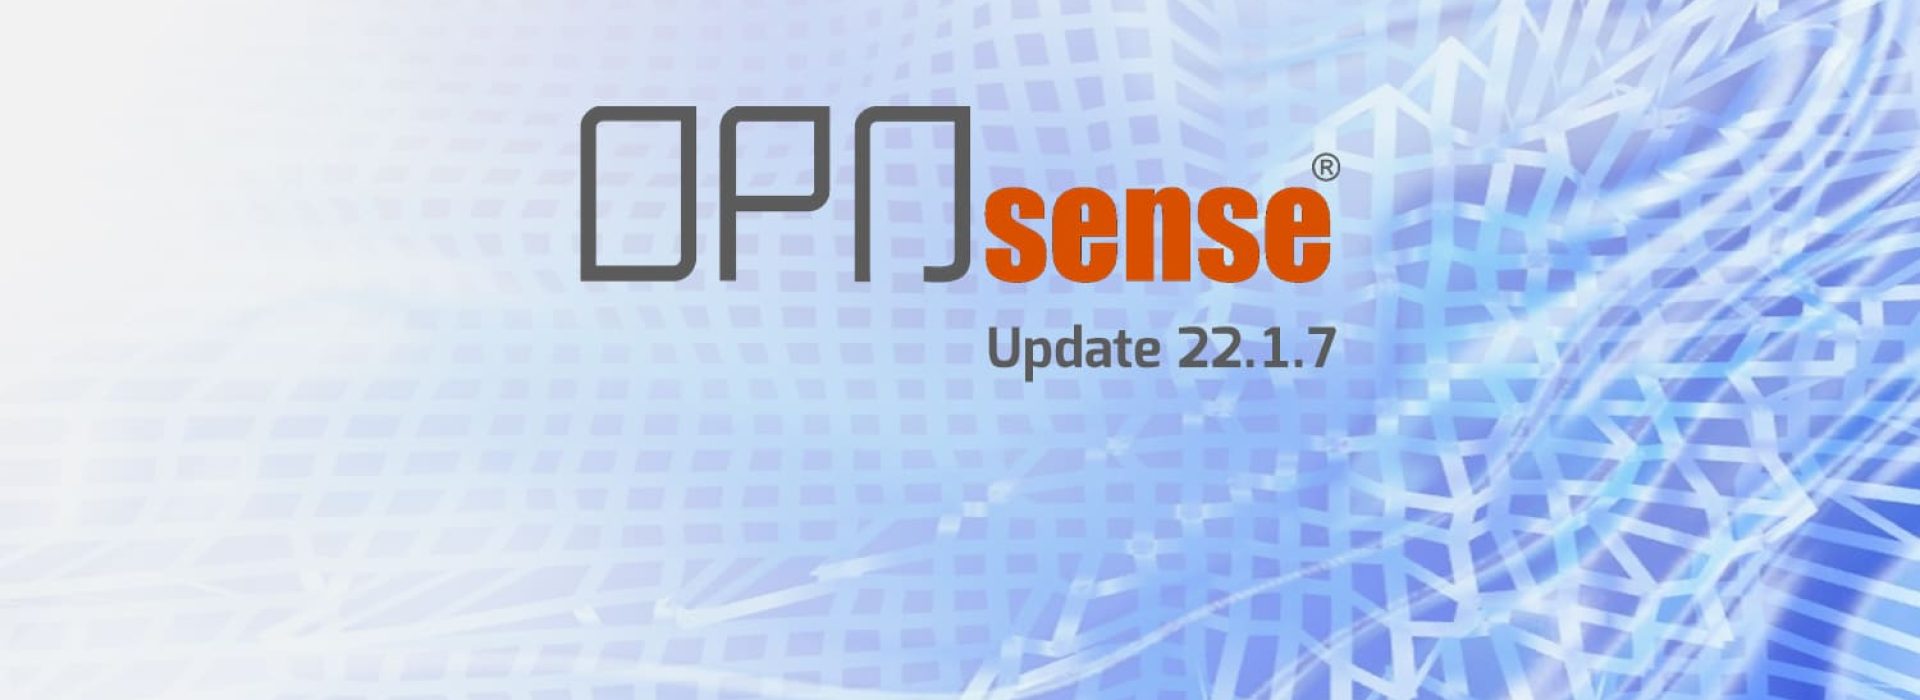 opnsense-update-22-1-7